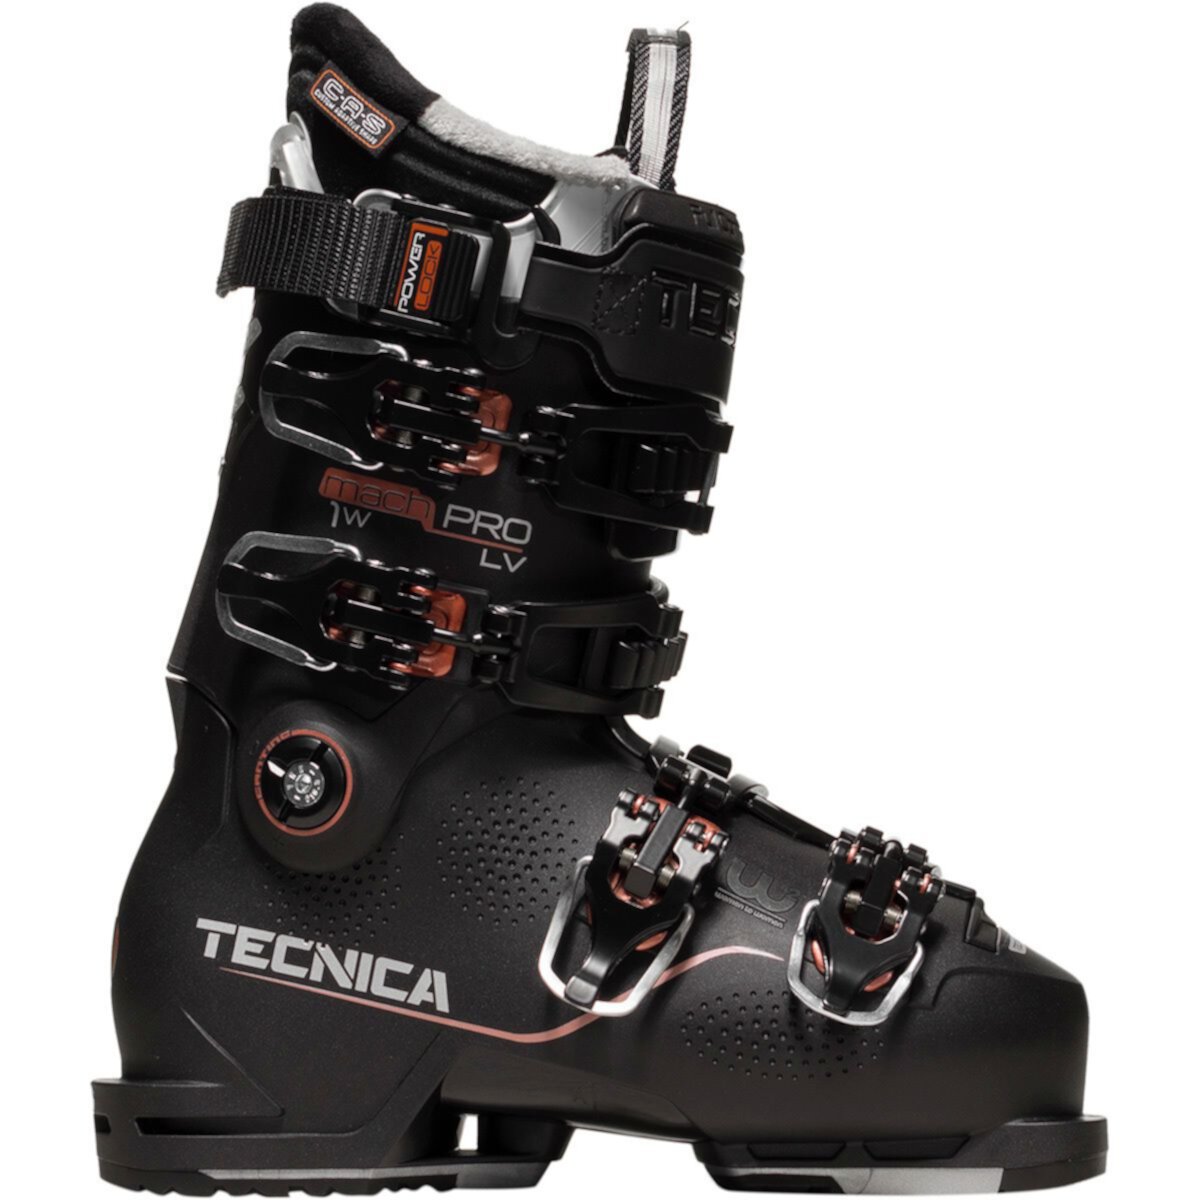 Лыжные ботинки Tecnica Mach1 LV 120 Pro - 2020 Tecnica